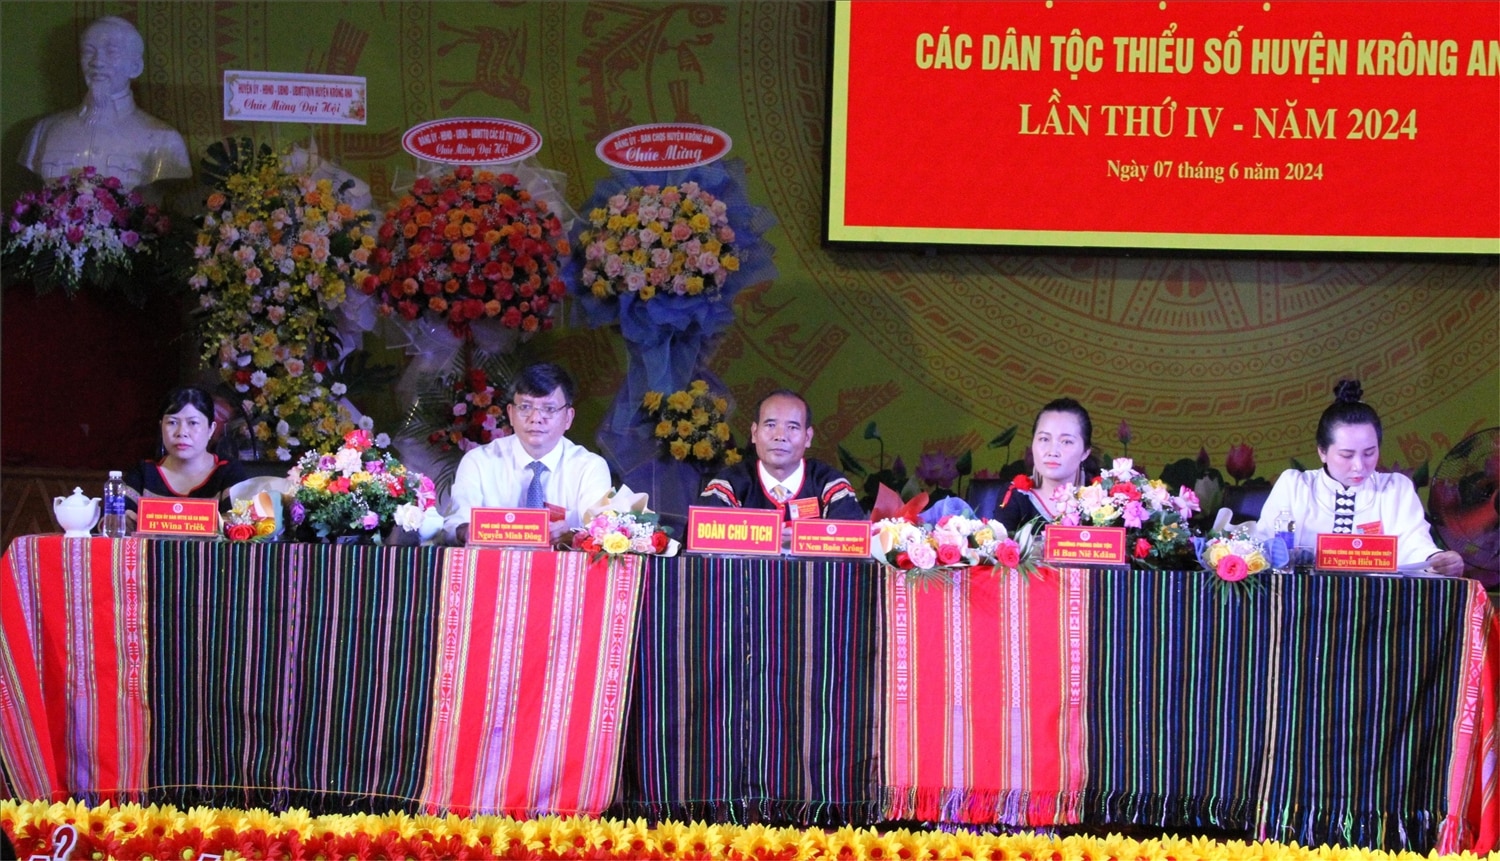 Huyện Krông Ana tổ chức thành công Đại hội Đại biểu các DTTS lần thứ IV, thông qua Quyết tâm thư đại hội với 11 chỉ tiêu trong giai đoạn mới